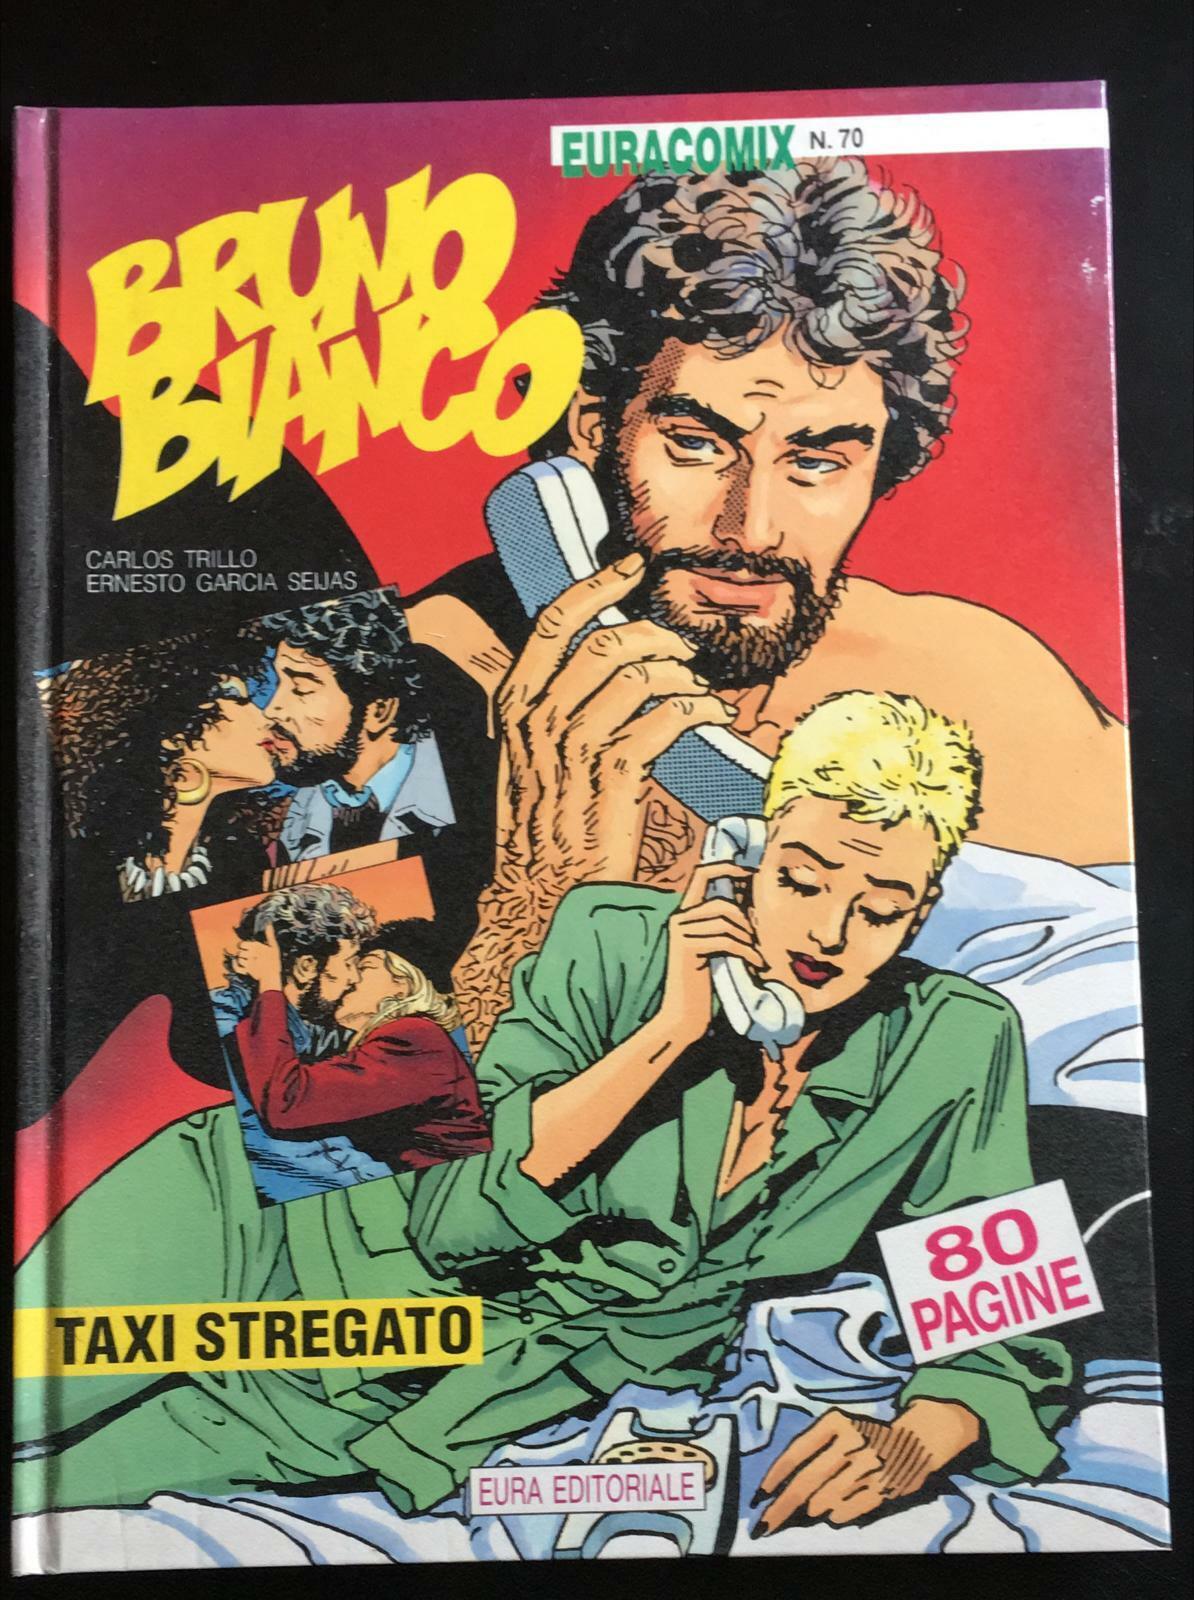 Bruno Bianco Taxi Stregato - C. Trillo E.G. Seijas,  Eura Editoriale - P